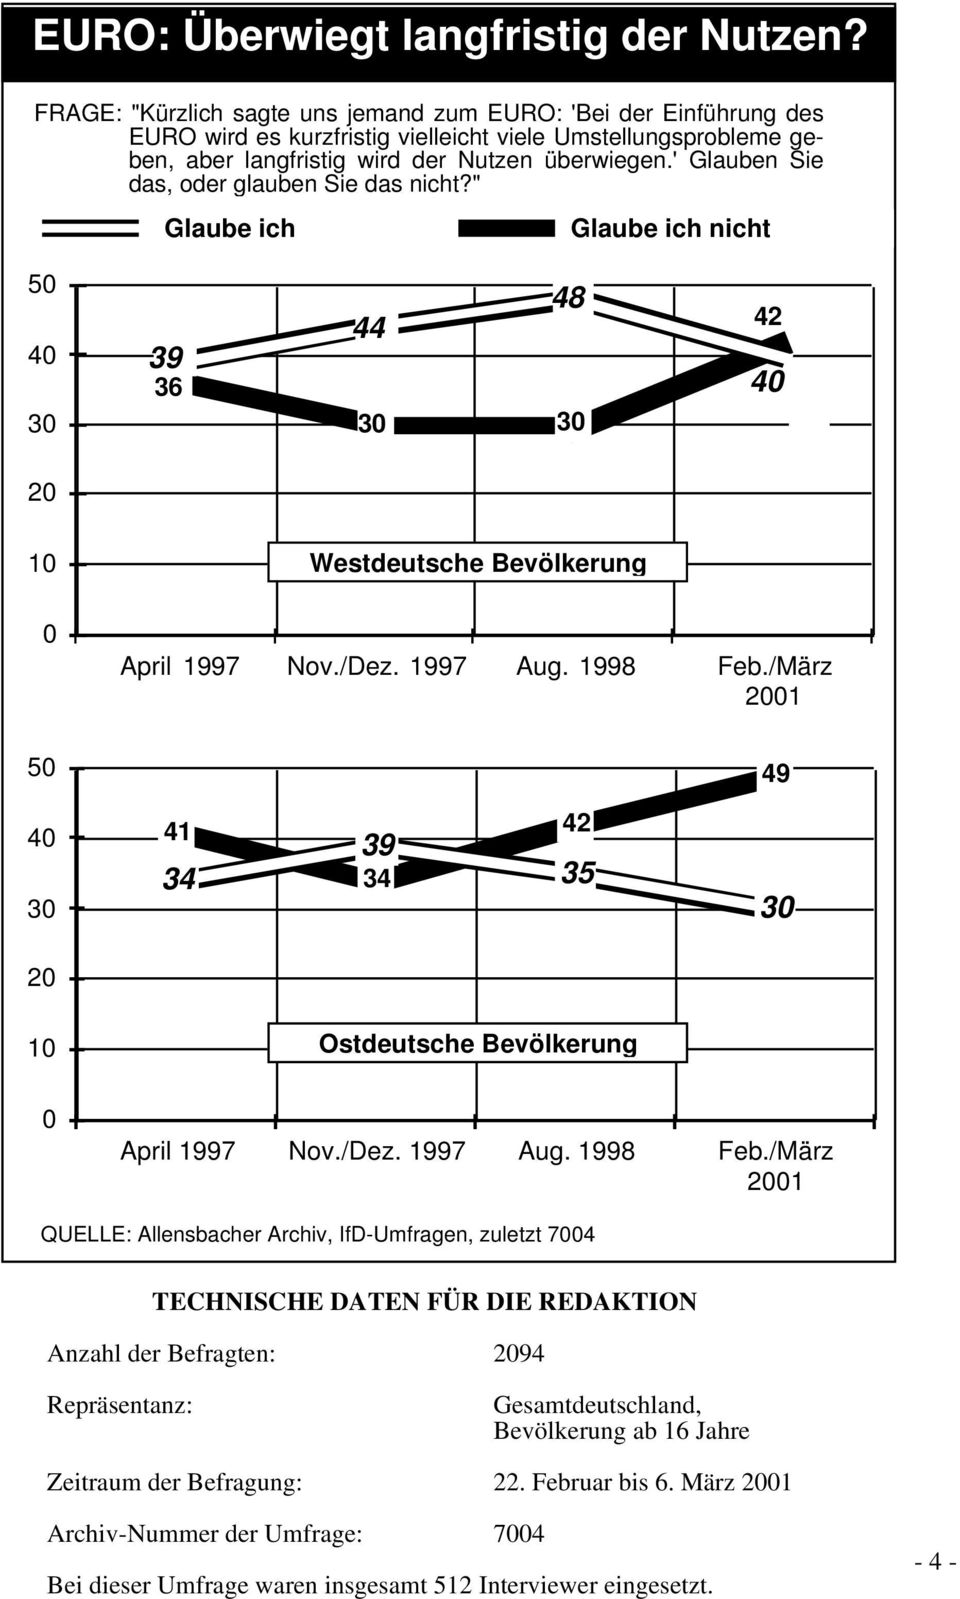 ' Glauben Sie das, oder glauben Sie das nicht?" Glaube ich Glaube ich nicht 36 44 48 4 0 10 Westdeutsche Bevölkerung 0 April 1997 Nov./Dez. 1997 Aug. 1998 Feb.